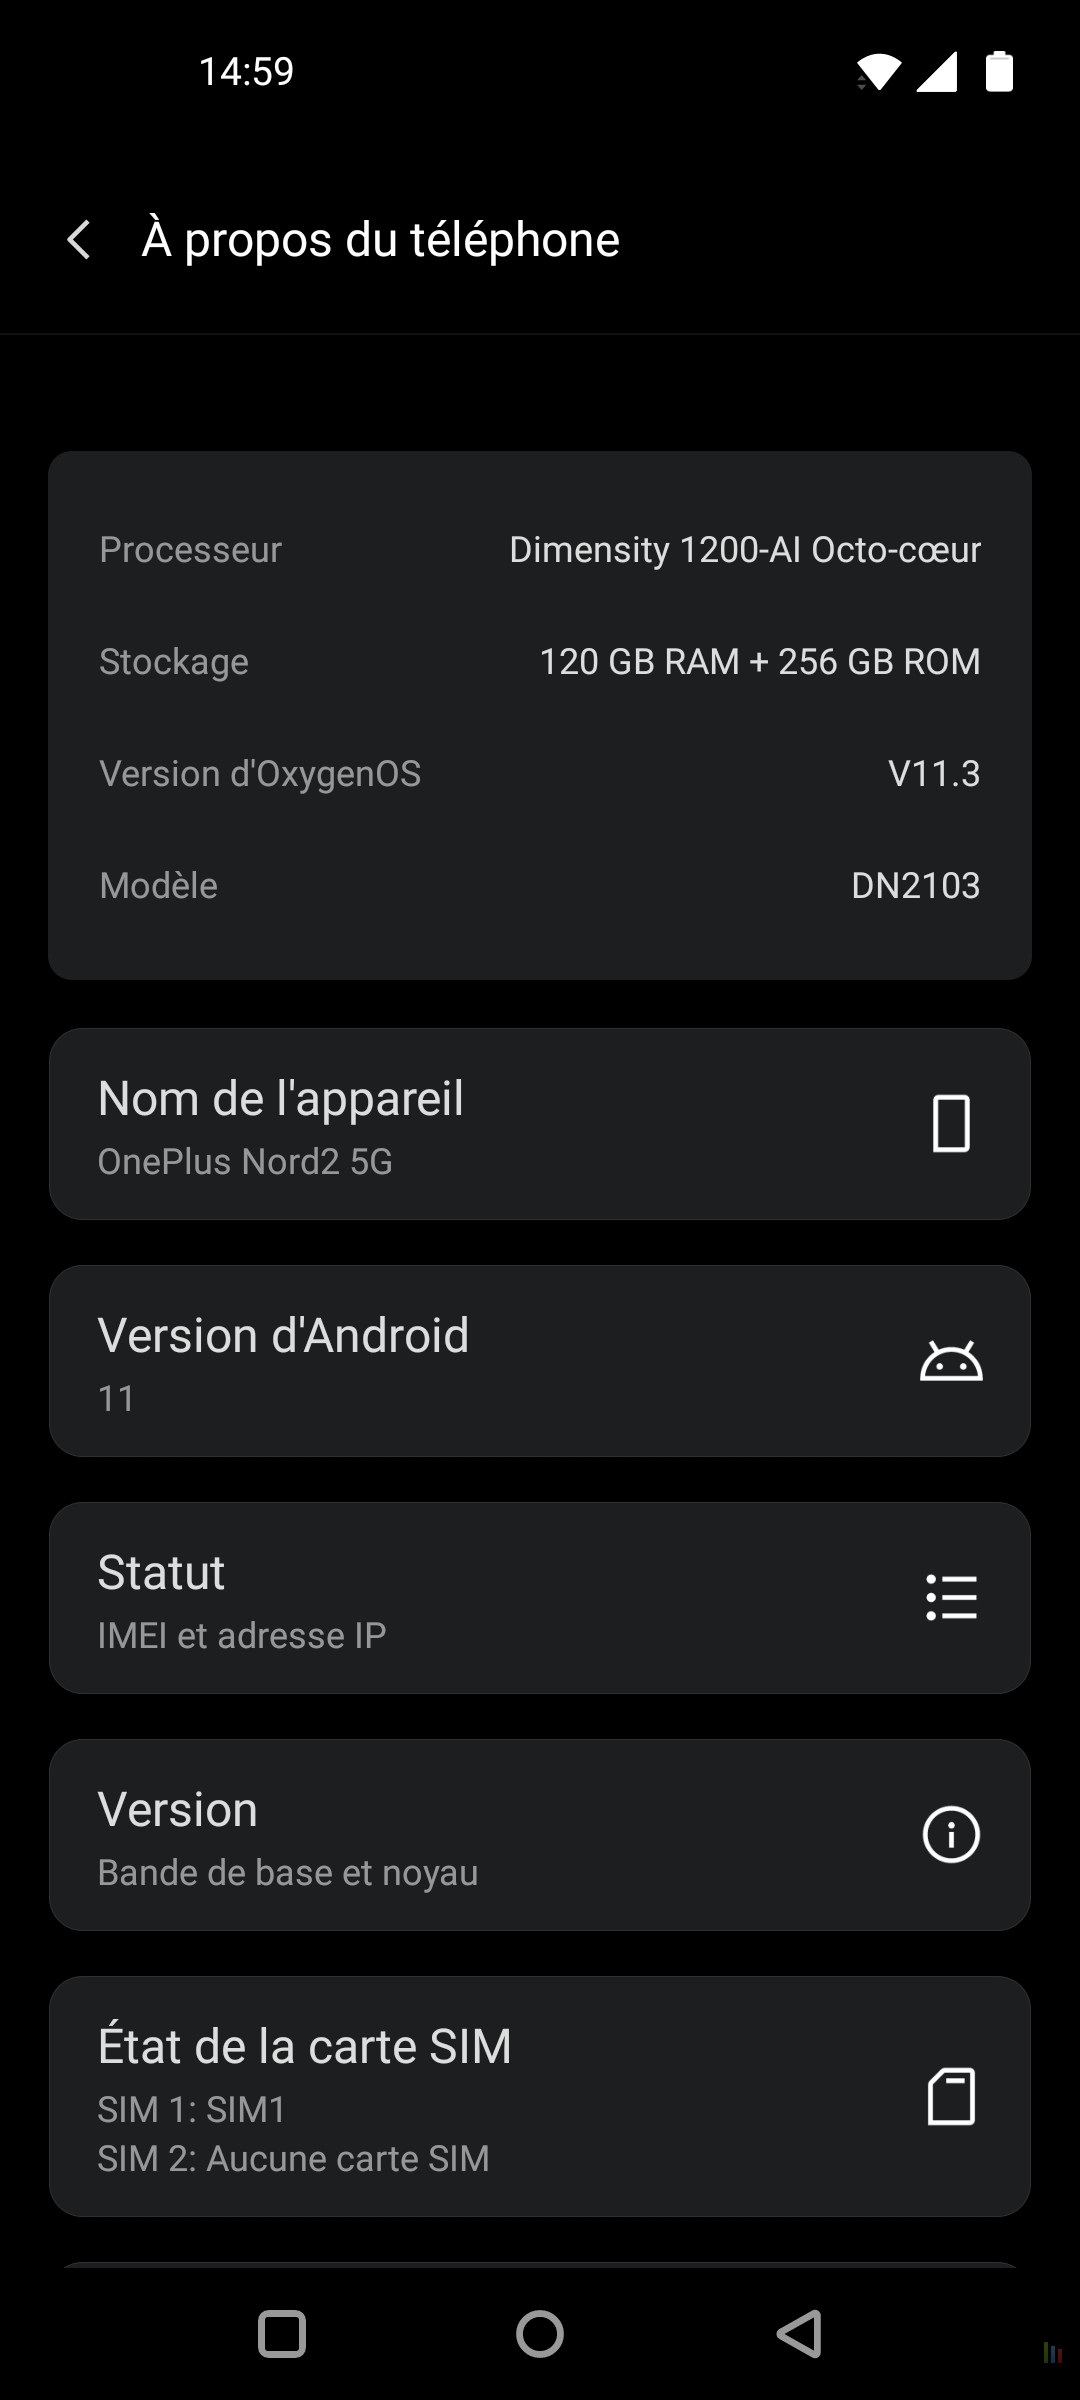 OnePlus Nord 2 specs